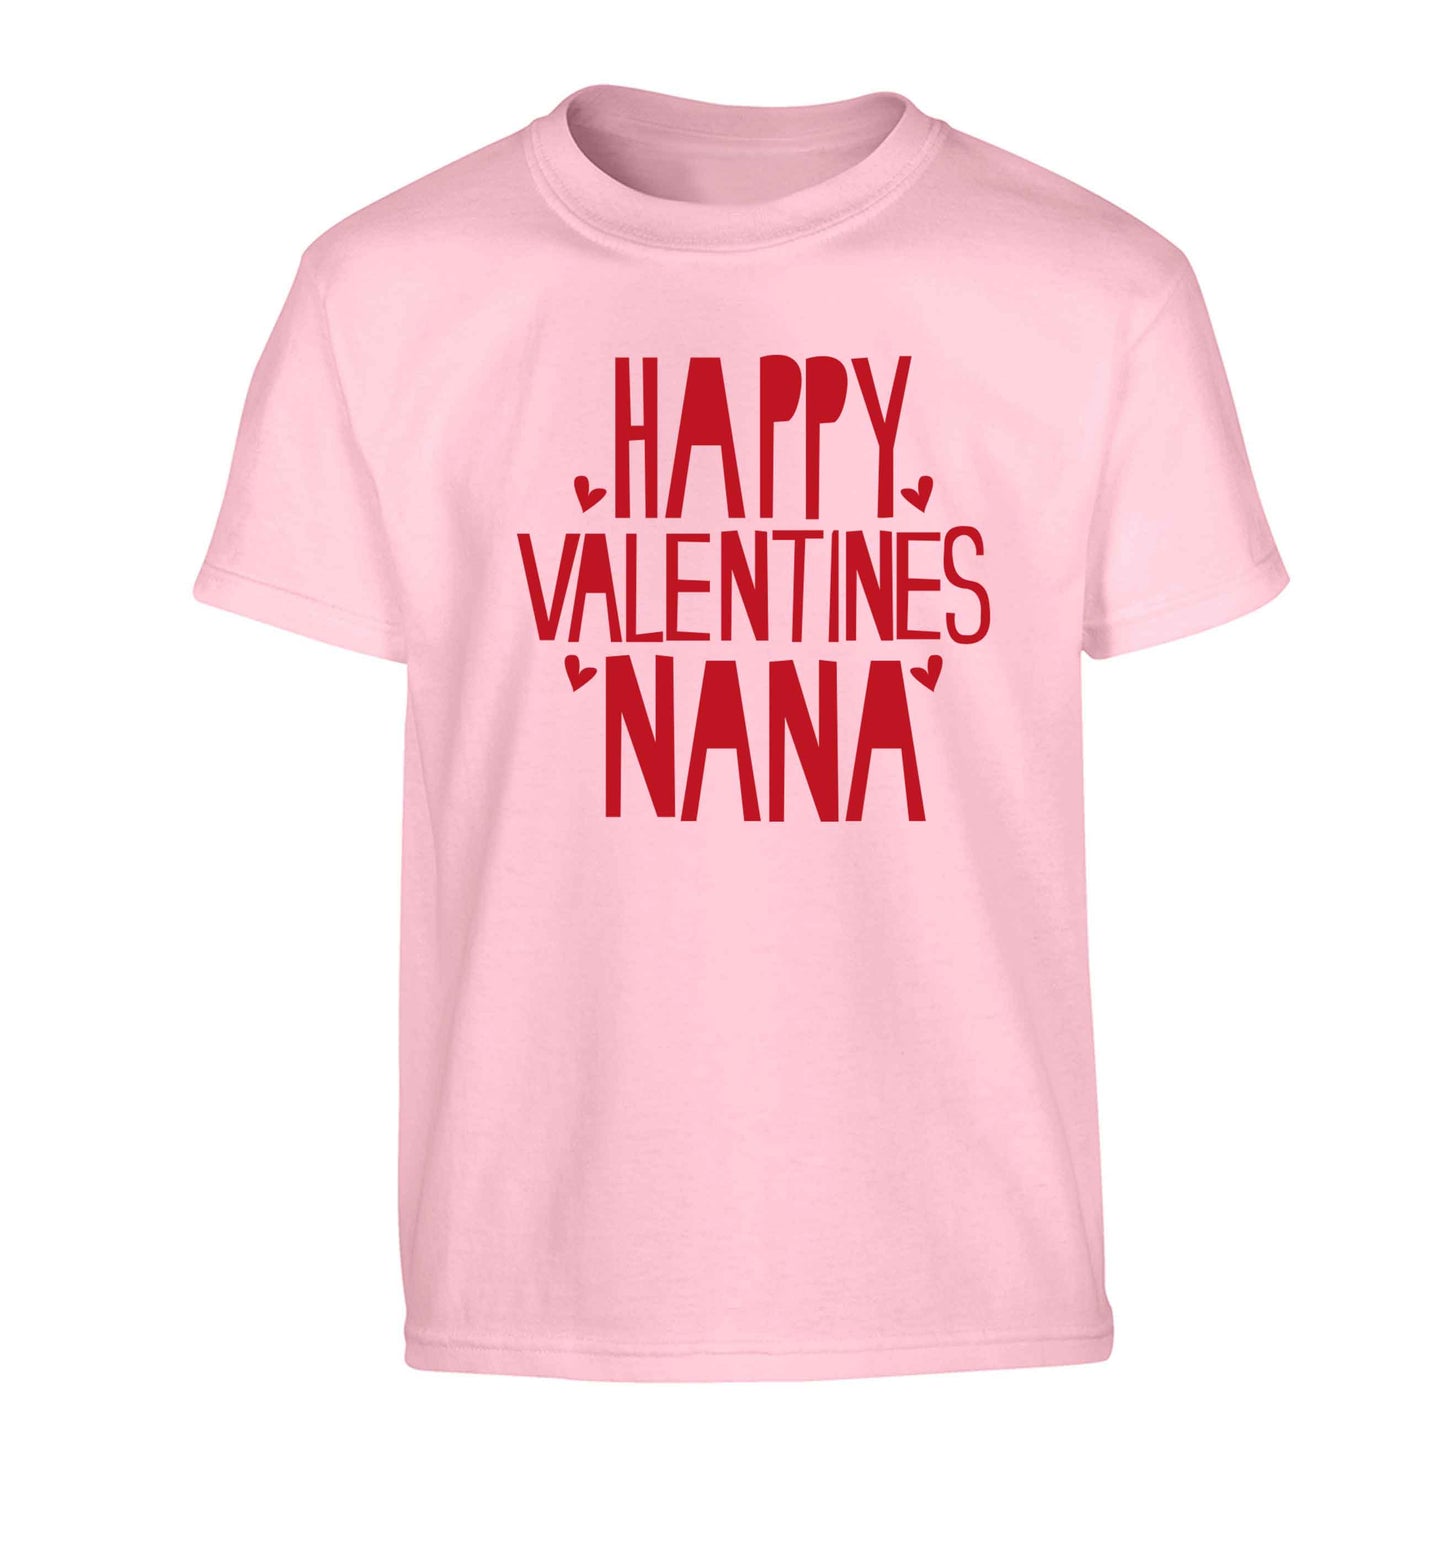 Happy valentines nana Children's light pink Tshirt 12-13 Years